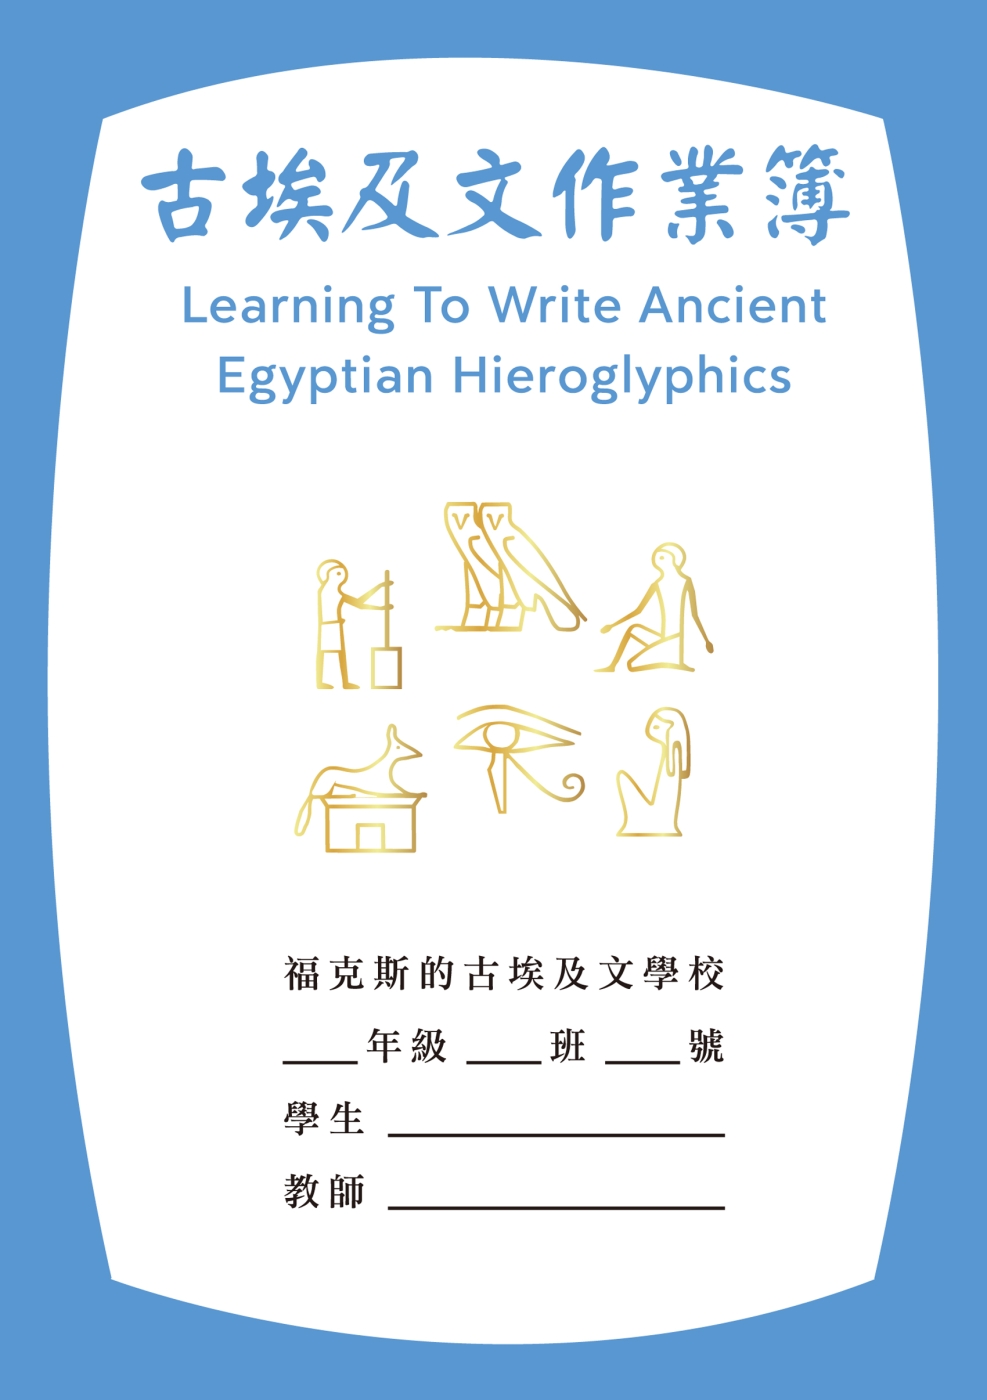 古埃及文作業簿